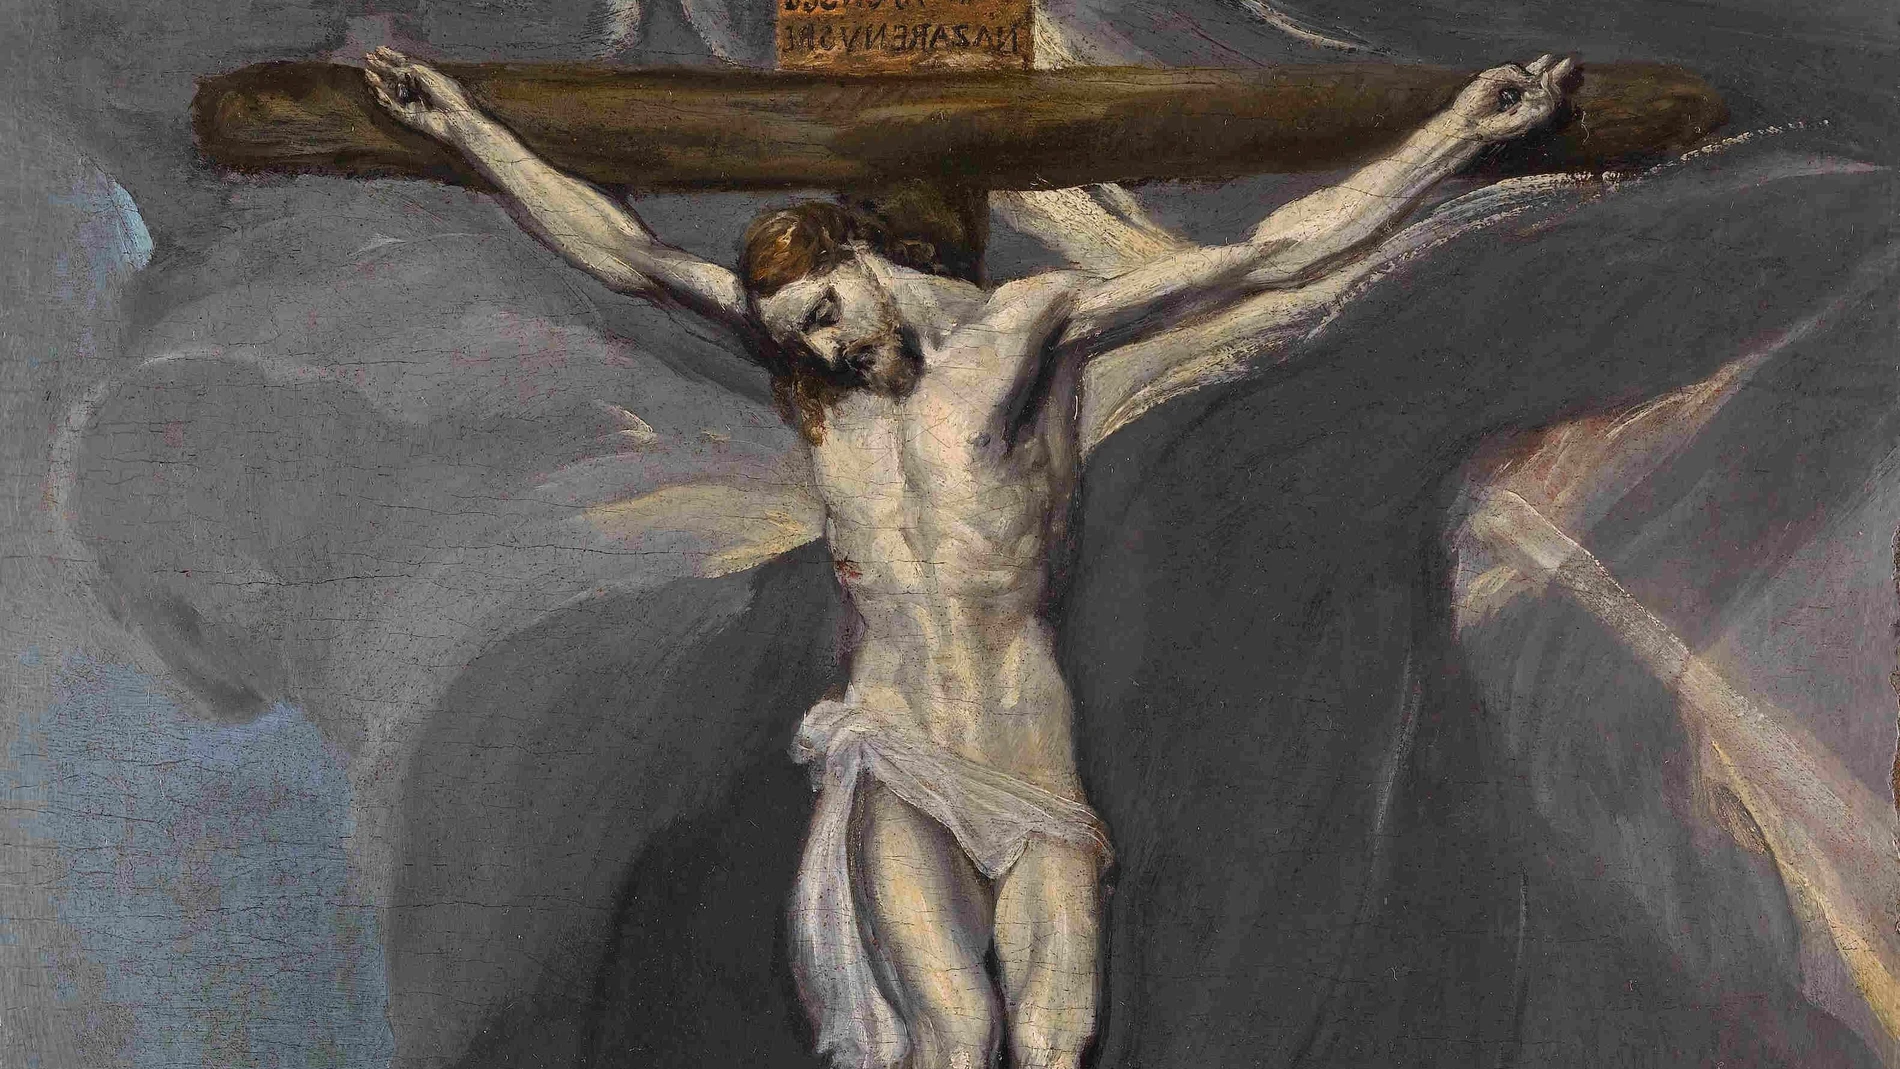 La obra 'Crucifixión', de El GrecoMINISTERIO DE CULTURA Y DEPORTE19/11/2021